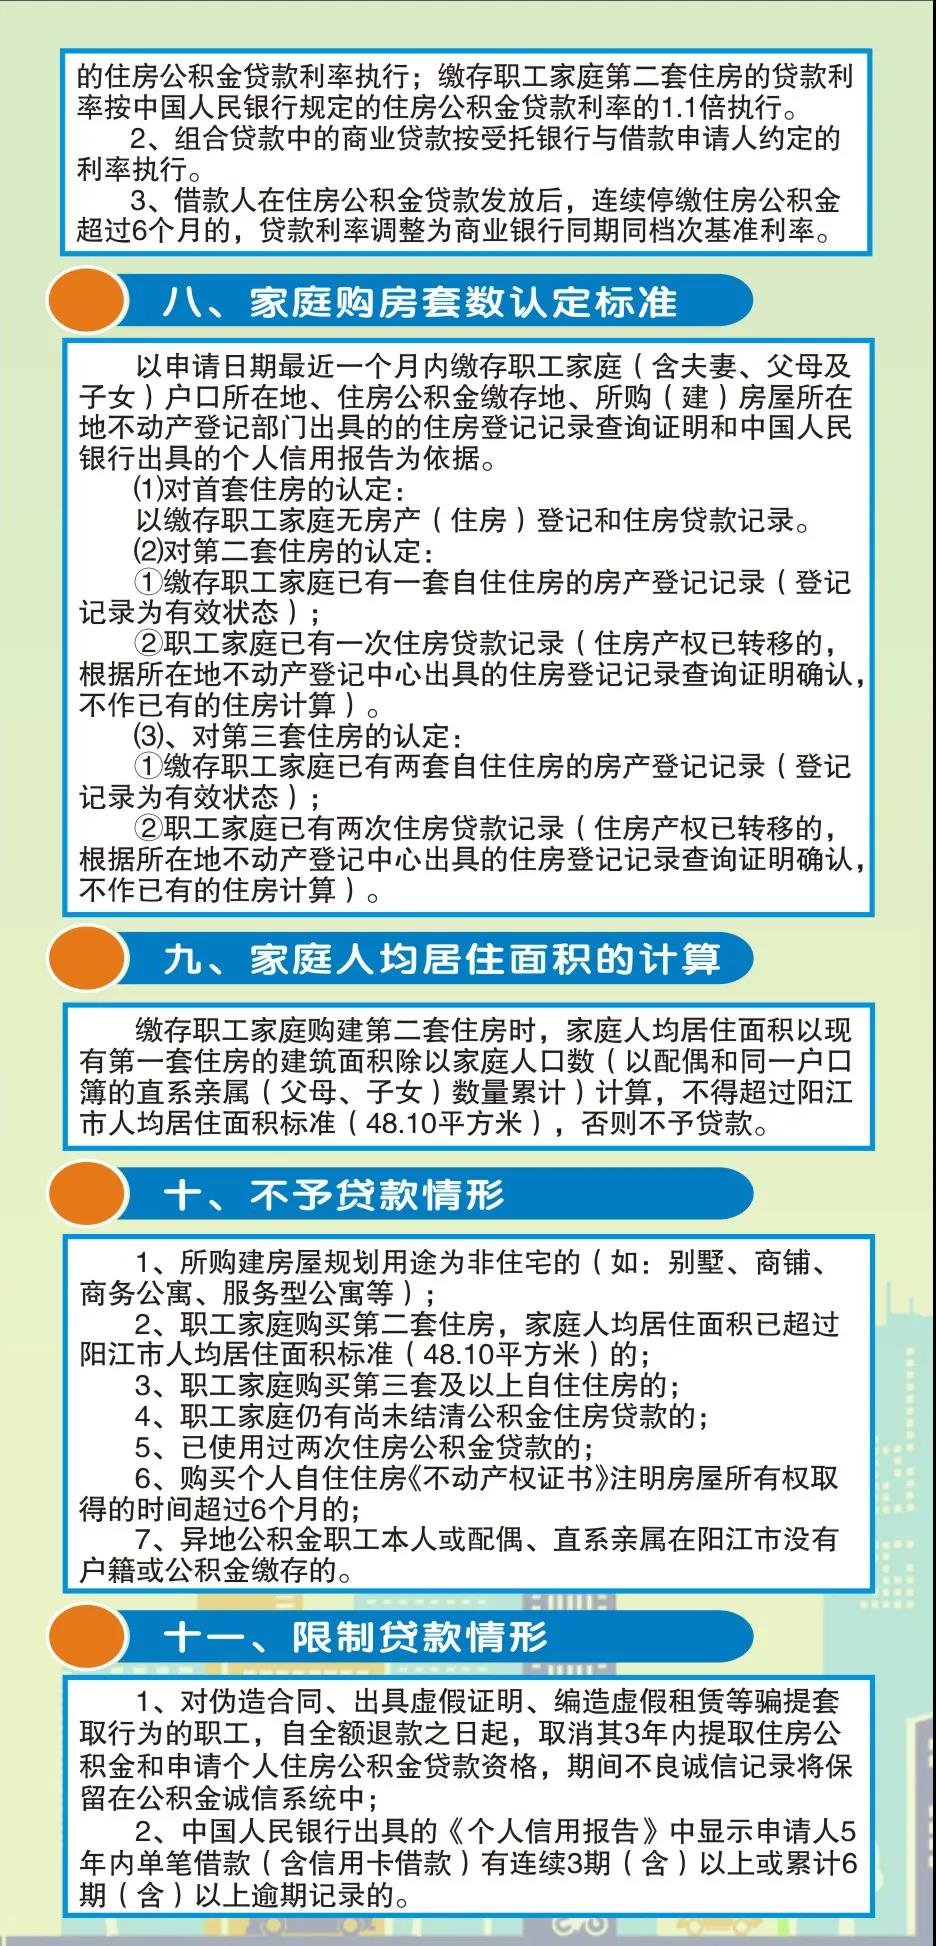 一张图读懂阳江市住房公积金贷款业务